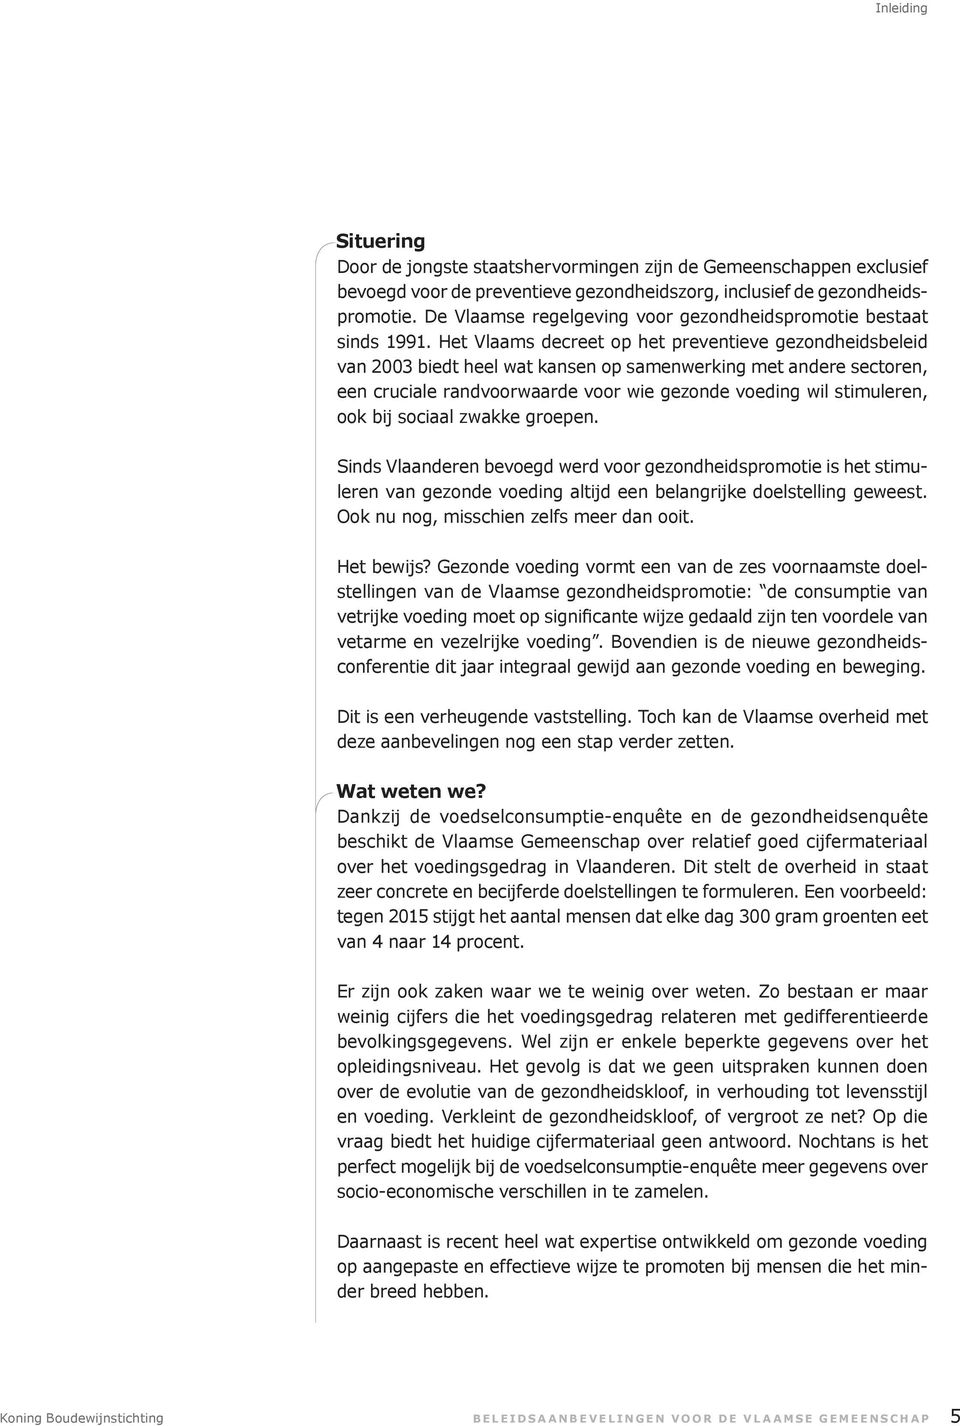 Het Vlaams decreet op het preventieve gezondheidsbeleid van 2003 biedt heel wat kansen op samenwerking met andere sectoren, een cruciale randvoorwaarde voor wie gezonde voeding wil stimuleren, ook